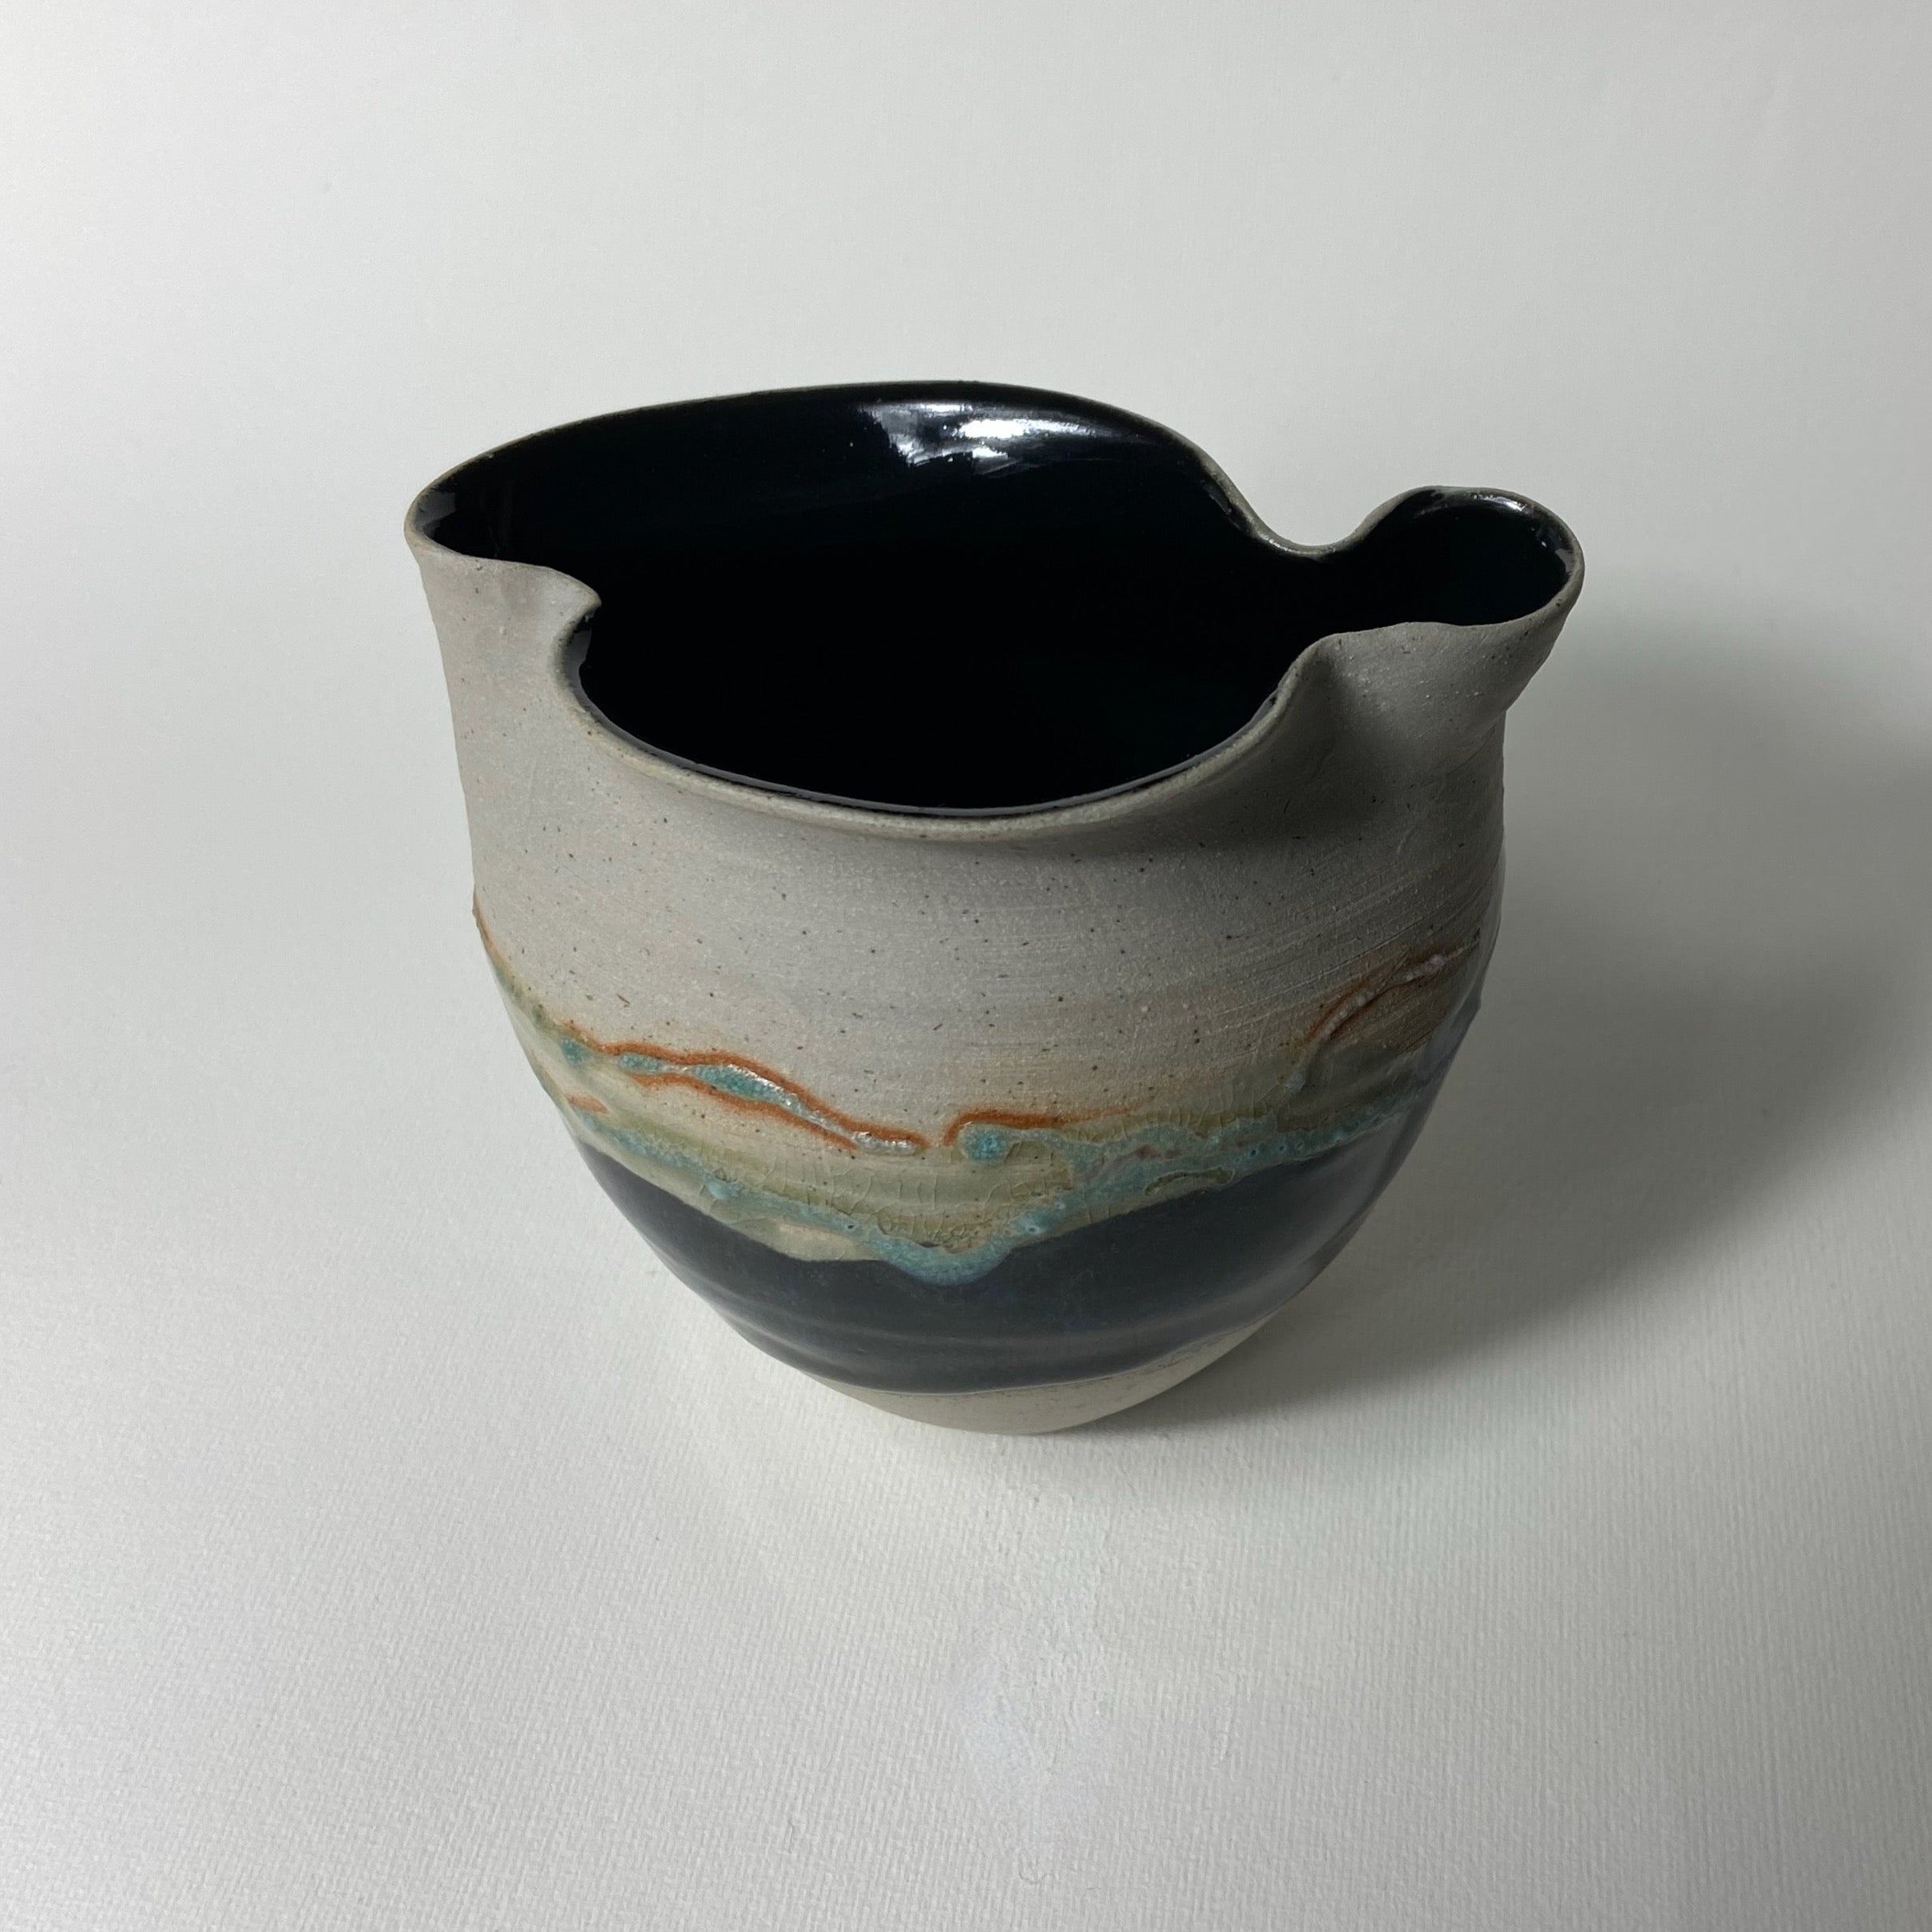 Hand Thrown Stoneware Pot - The Nancy Smillie Shop - Art, Jewellery & Designer Gifts Glasgow